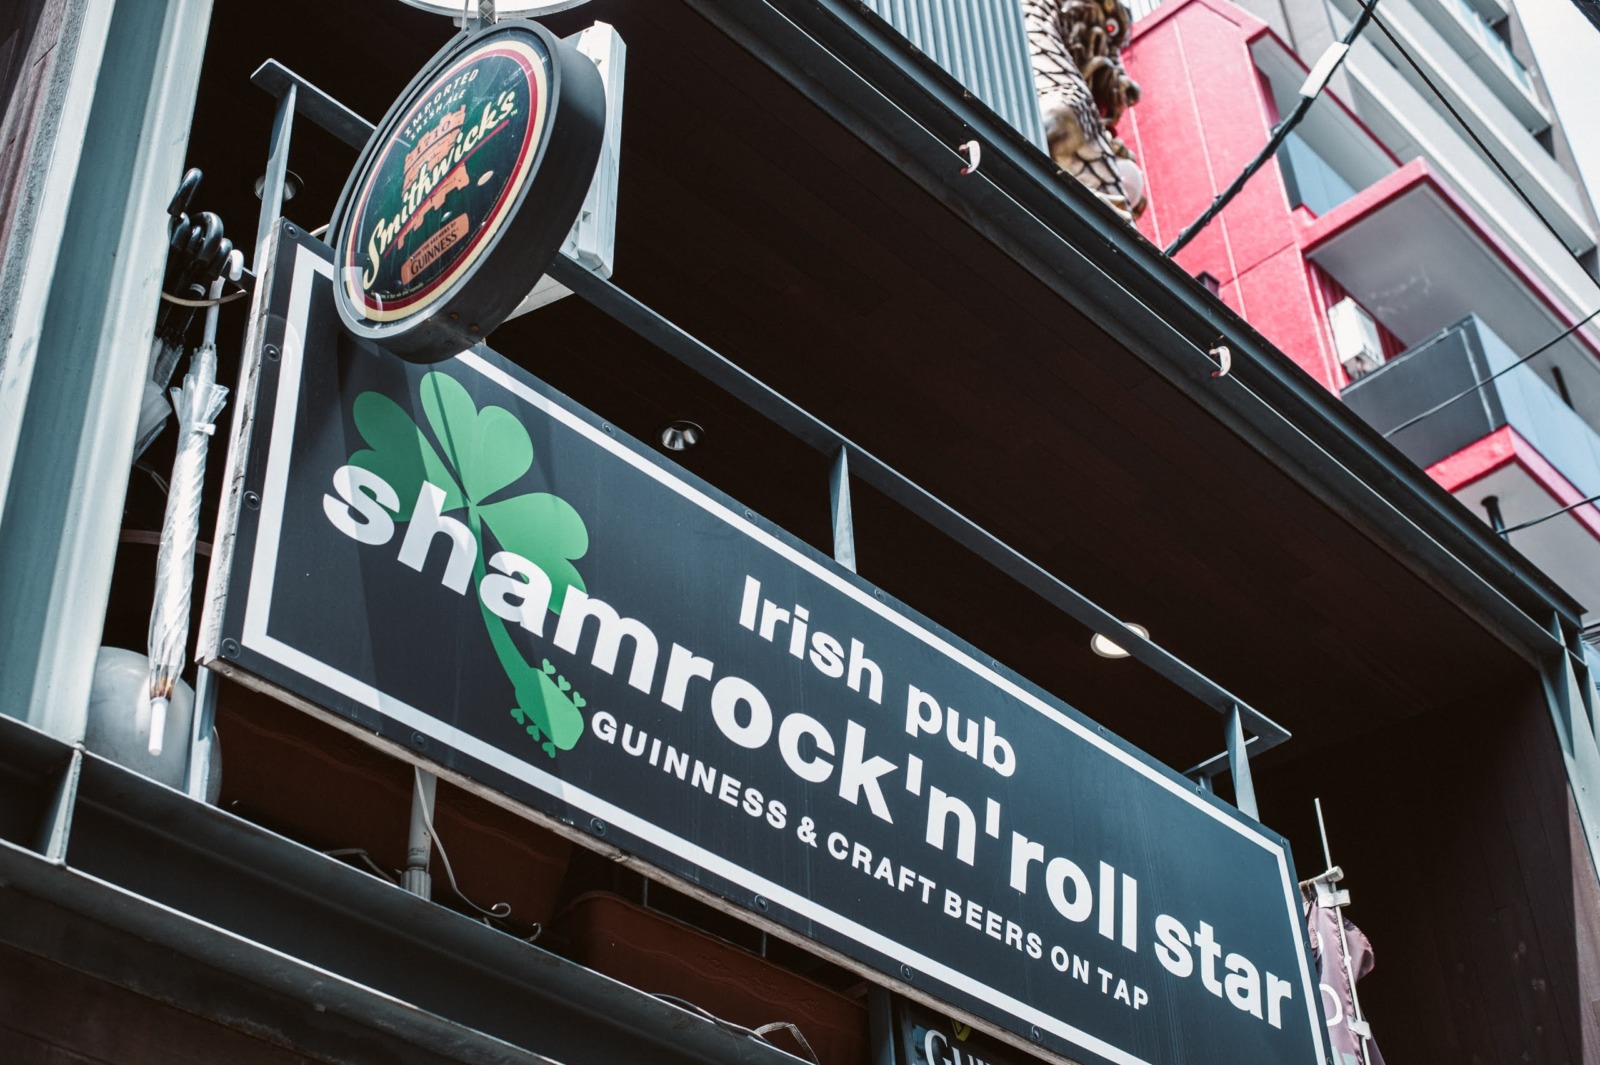 Irish pub Shamrock ‘N’ Roll Star